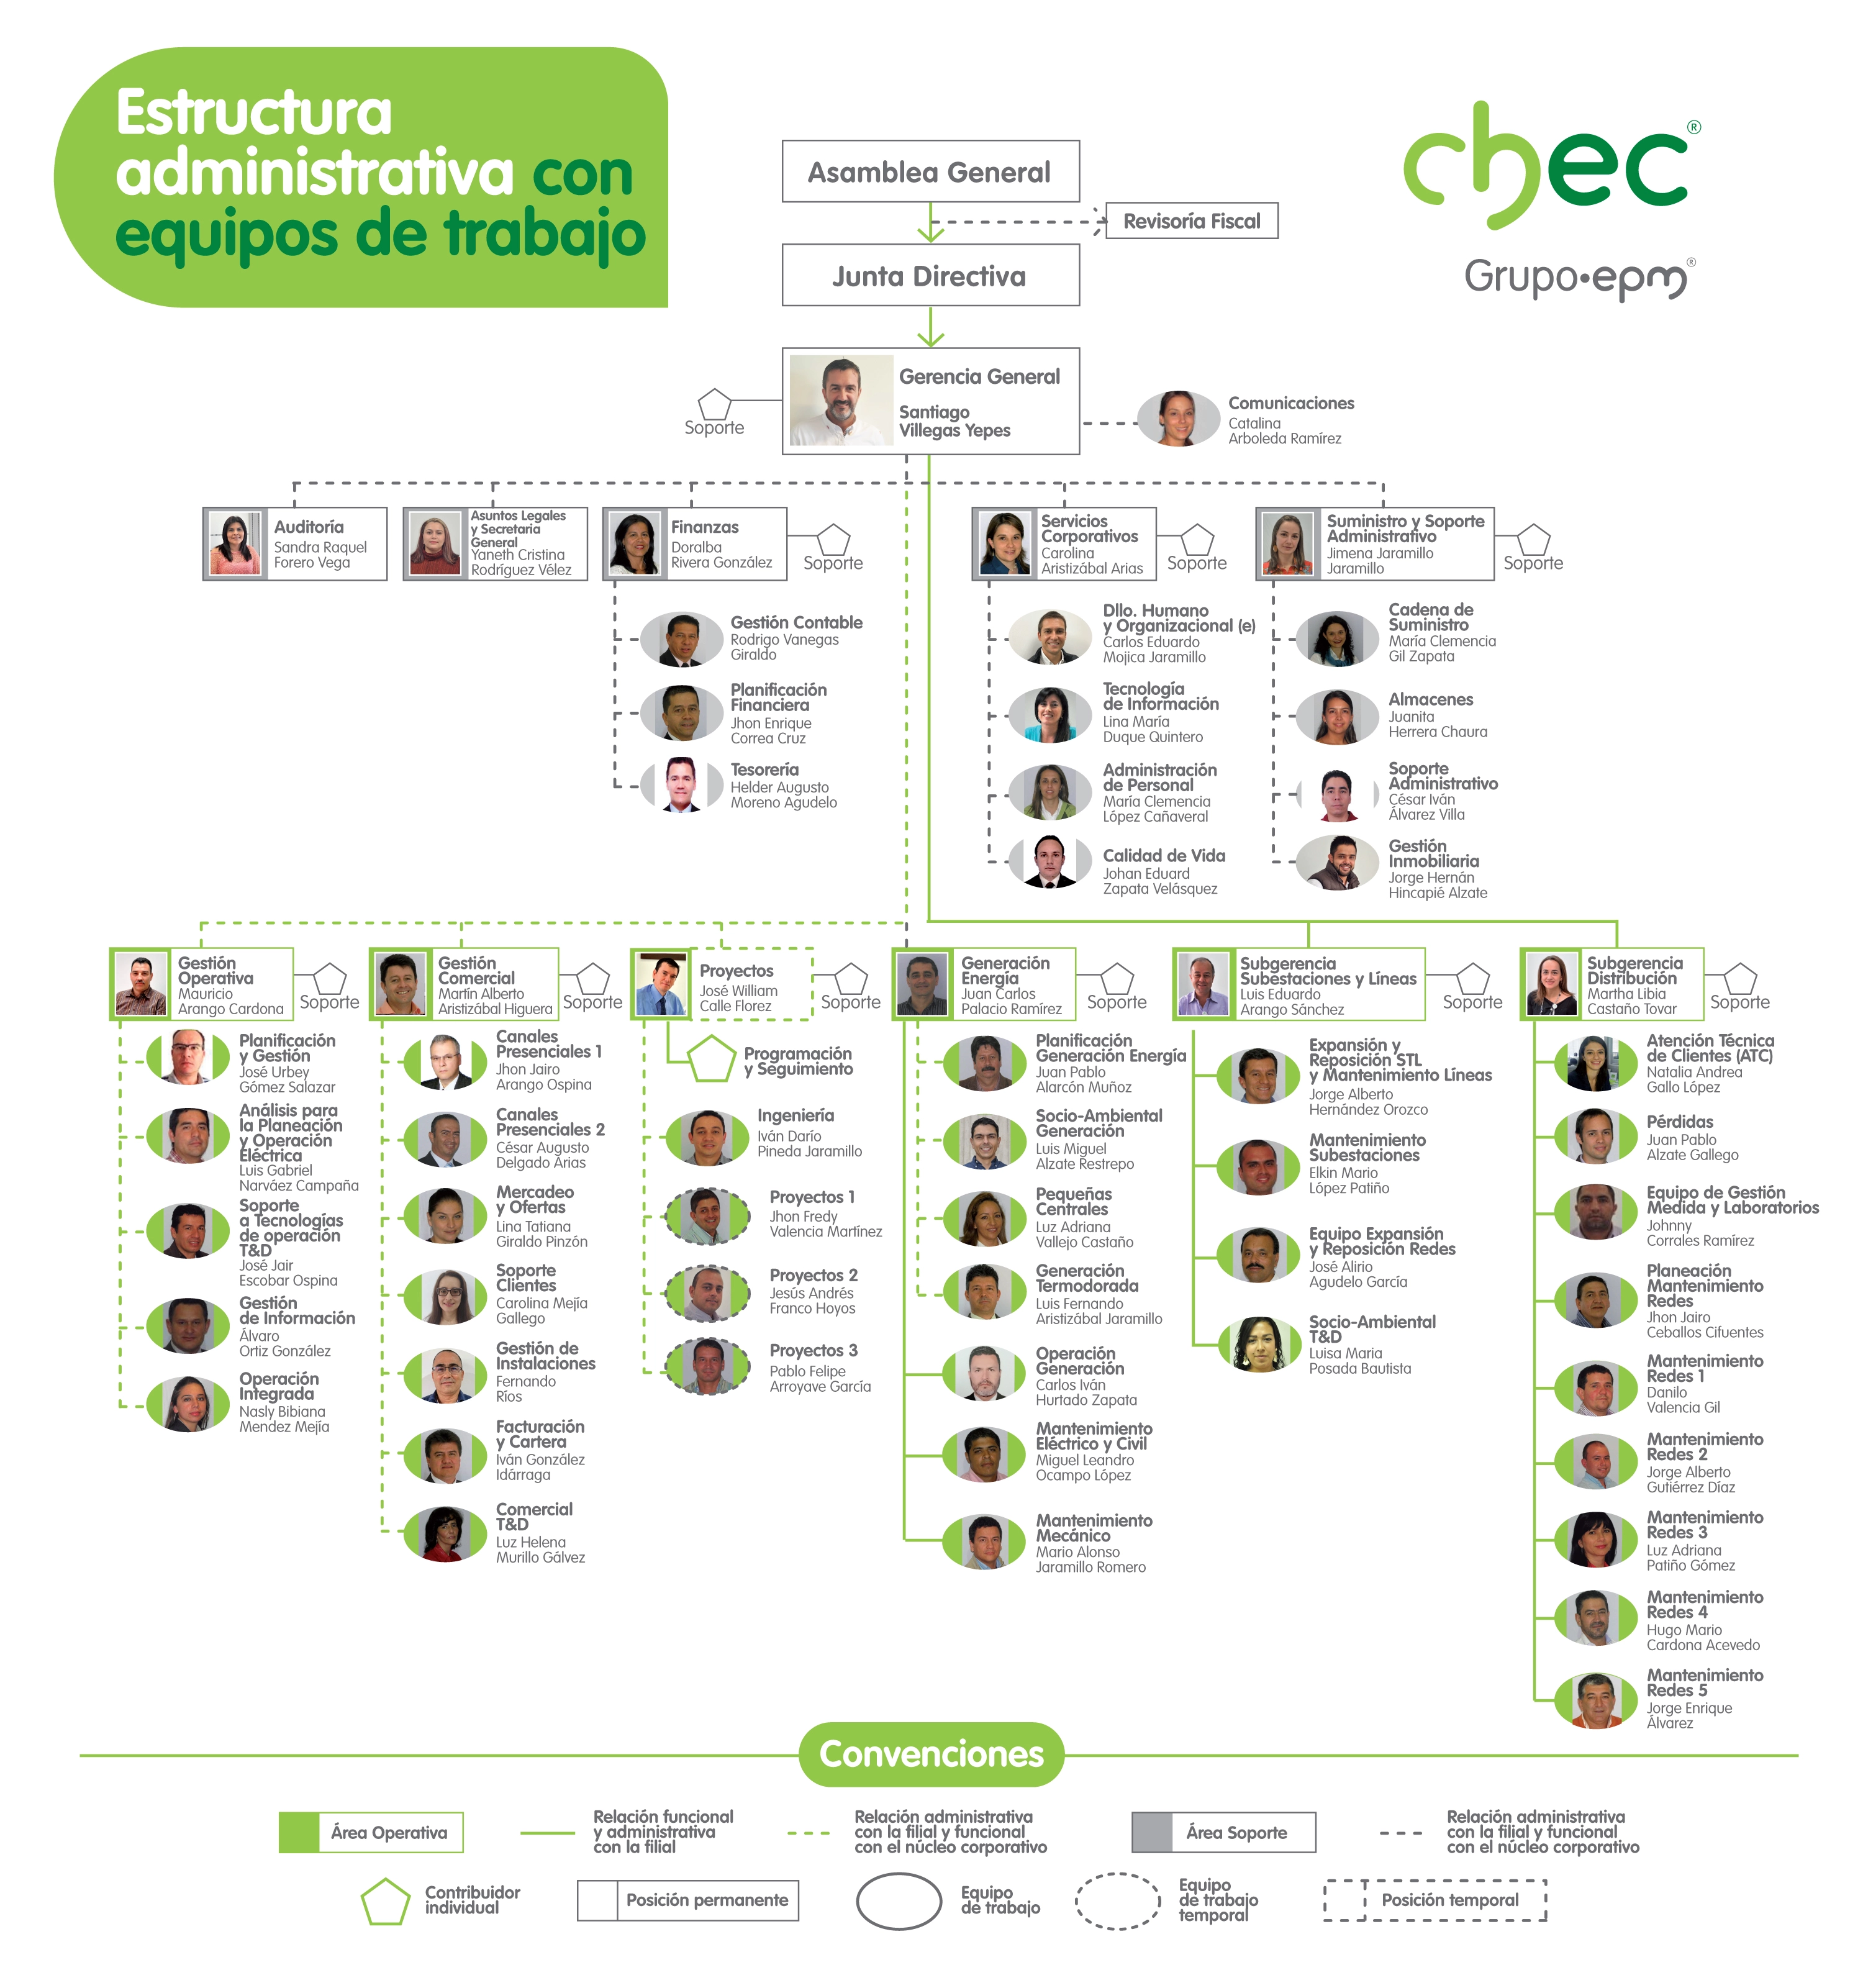 Estructura administrativa CHEC